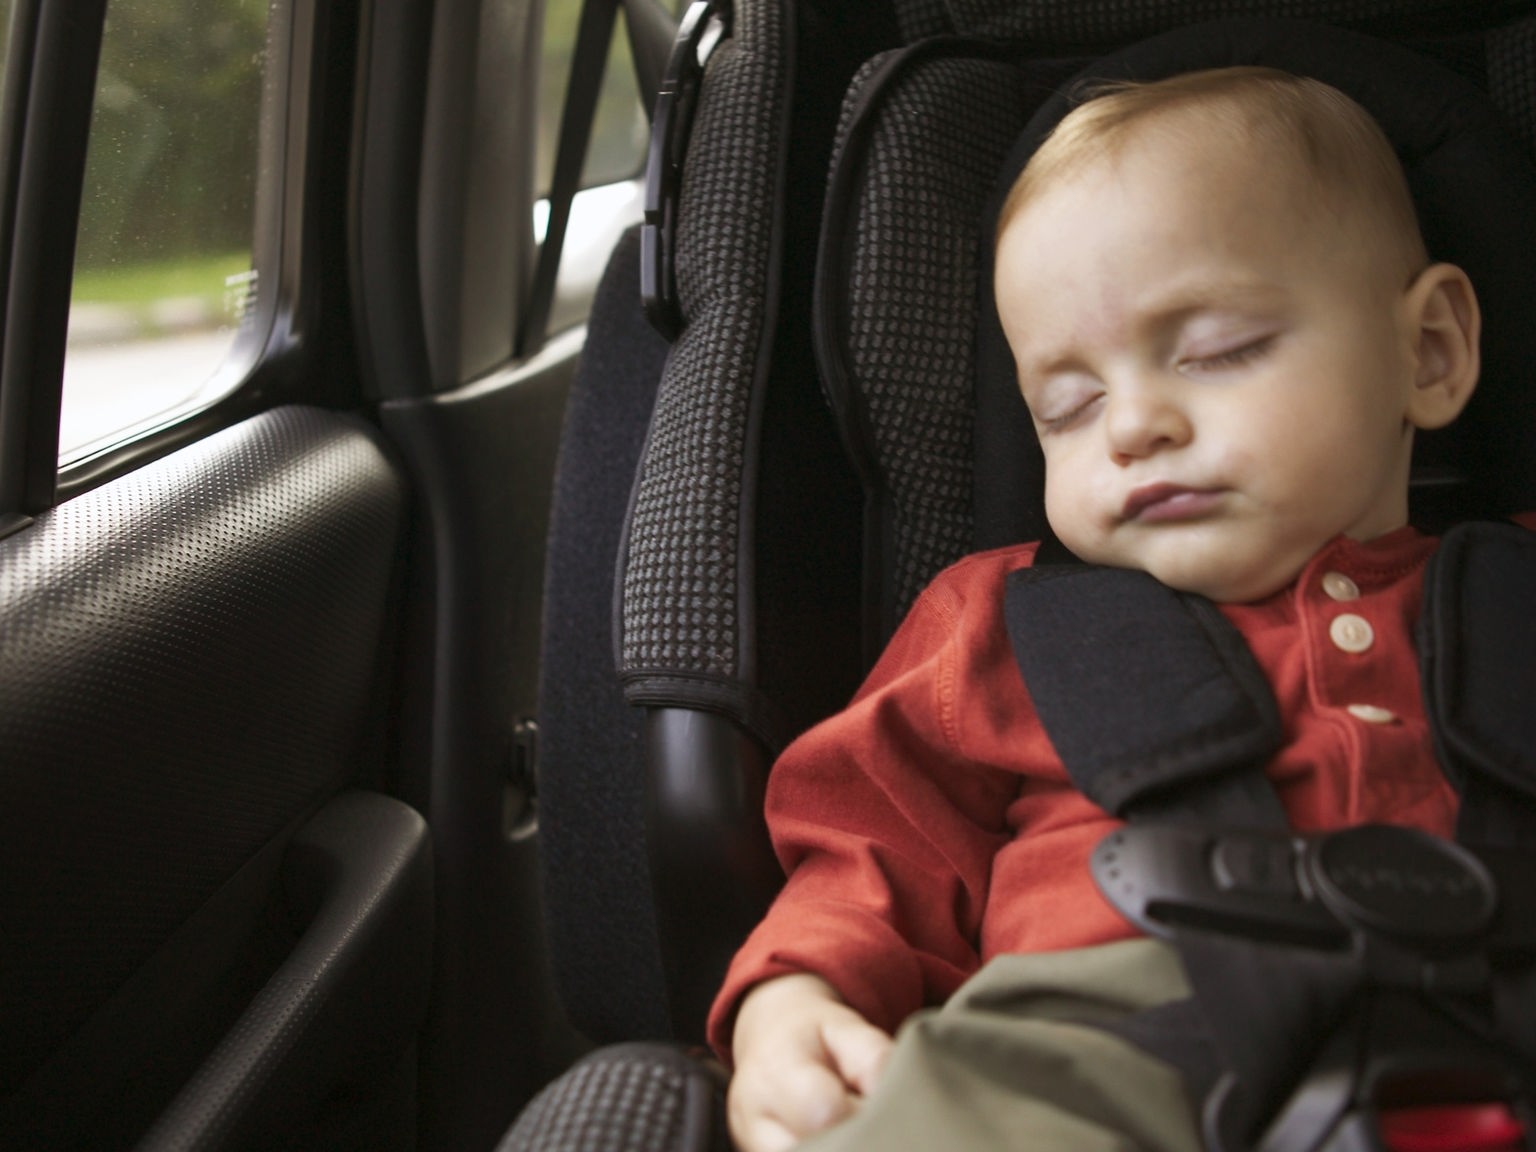 Kind oder Tier im heissen Auto: Darf ich die Scheibe einschlagen?